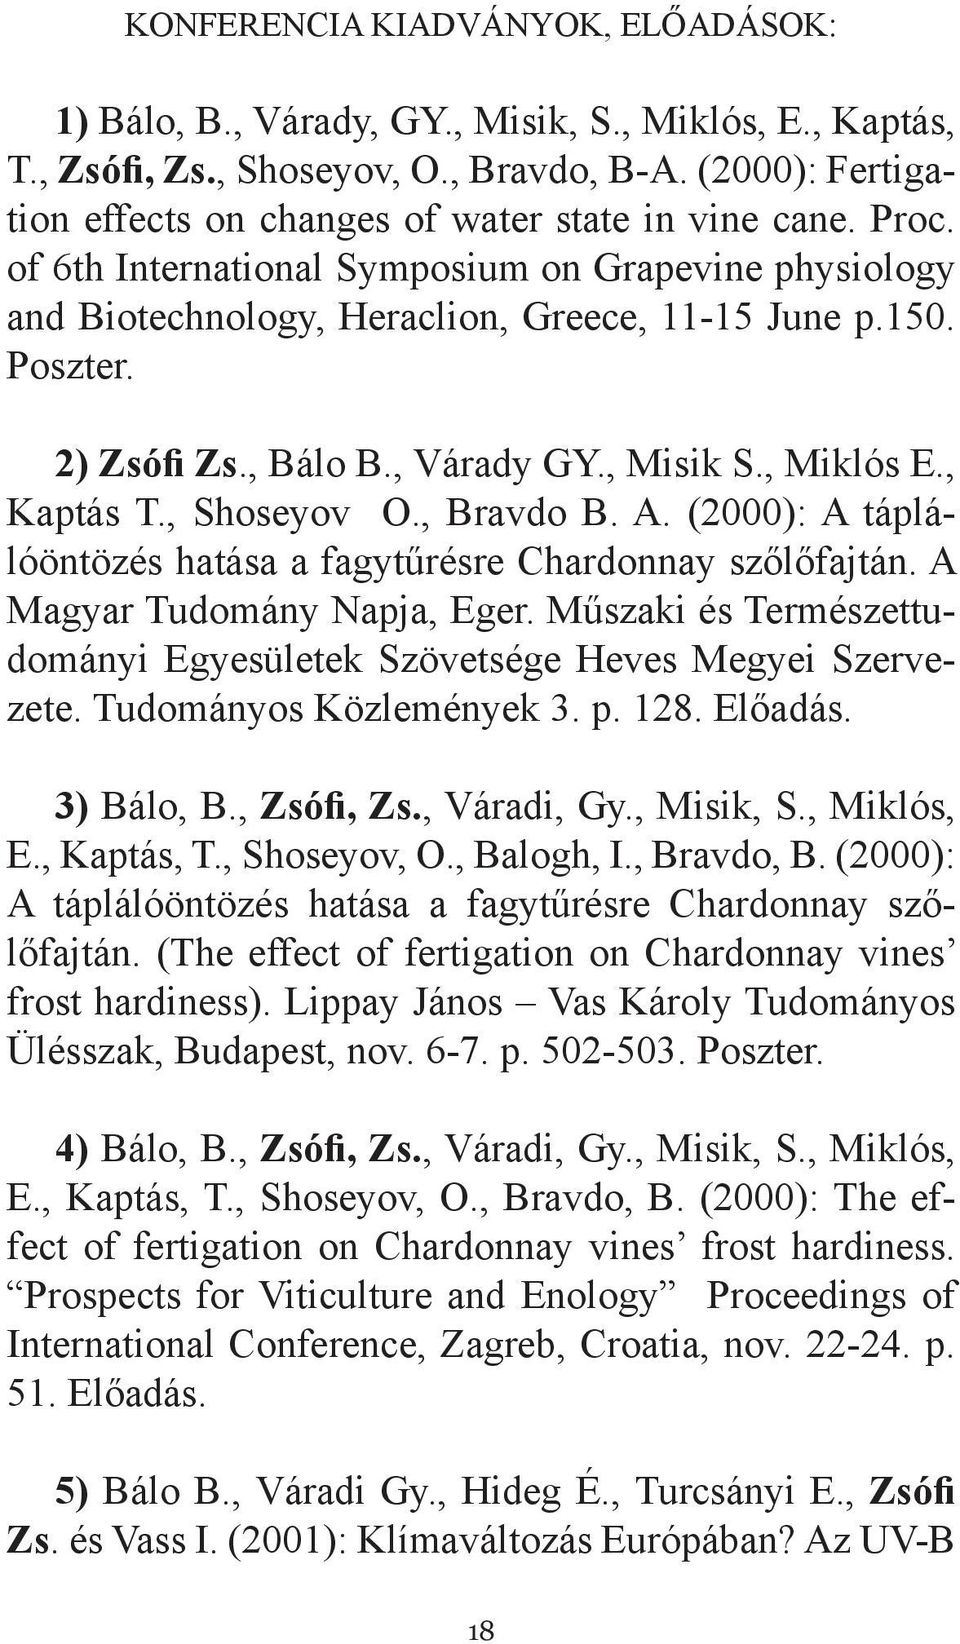 2) Zsófi Zs., Bálo B., Várady GY., Misik S., Miklós E., Kaptás T., Shoseyov O., Bravdo B. A. (2000): A táplálóöntözés hatása a fagytűrésre Chardonnay szőlőfajtán. A Magyar Tudomány Napja, Eger.